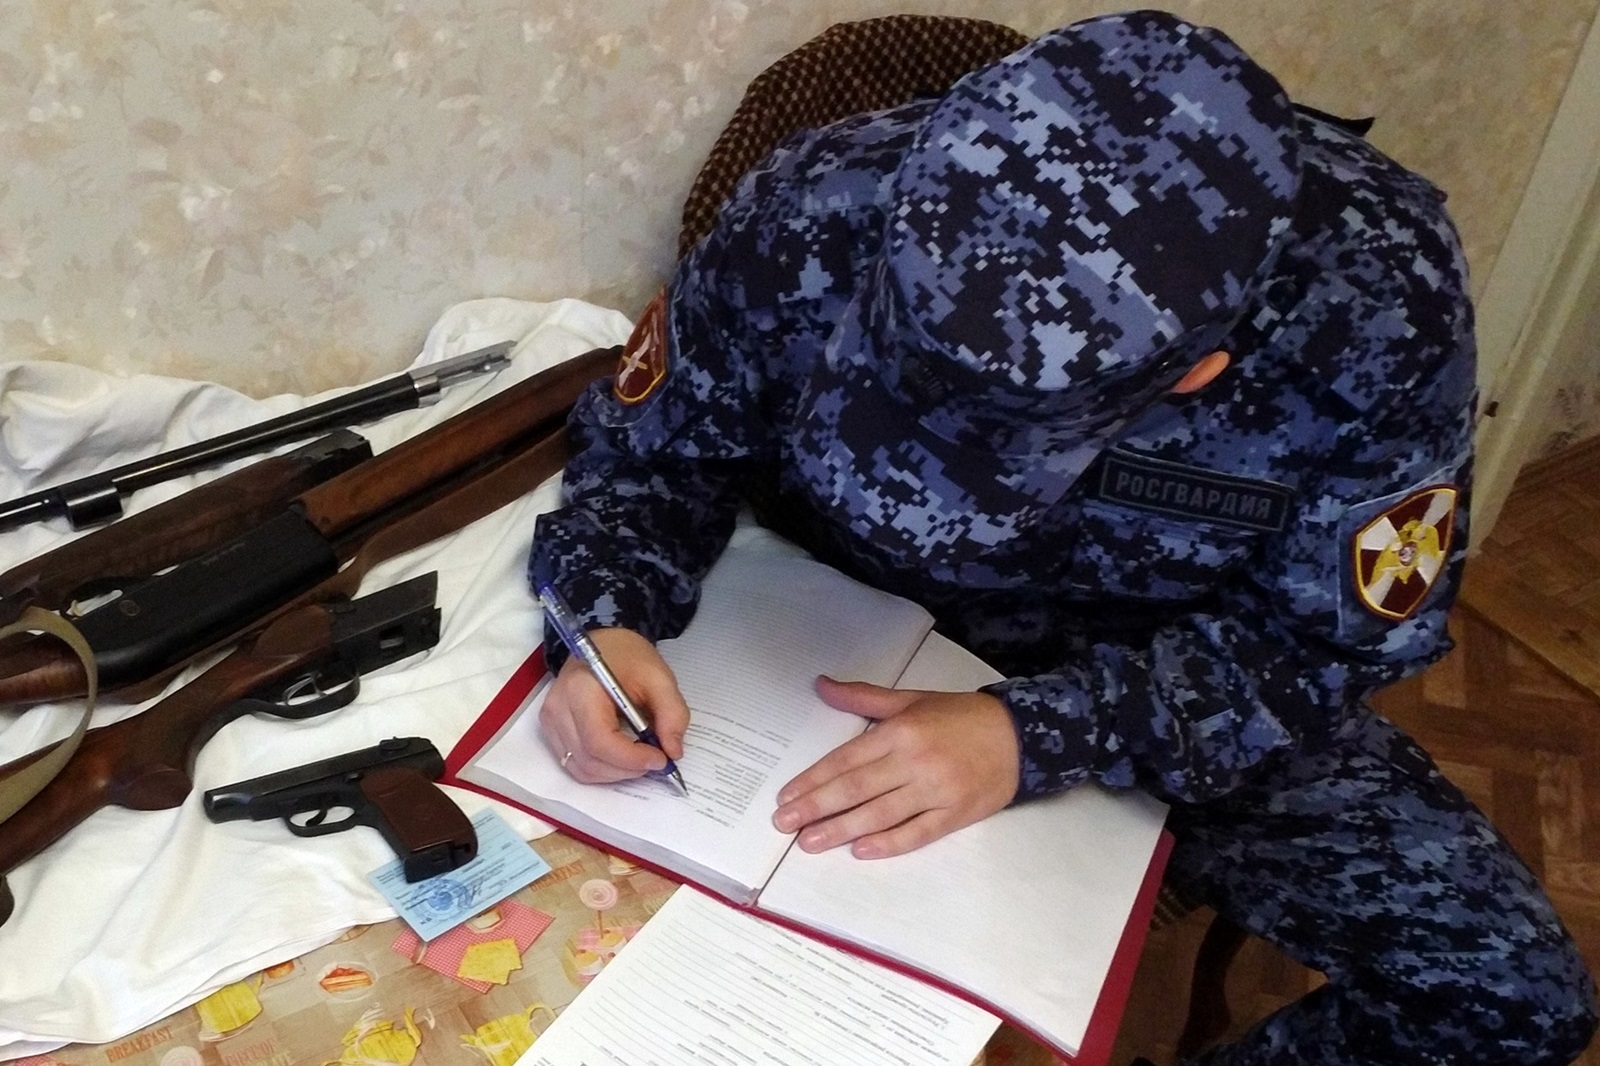 Росгвардия во Владимирской области проводит акцию "Оружие"